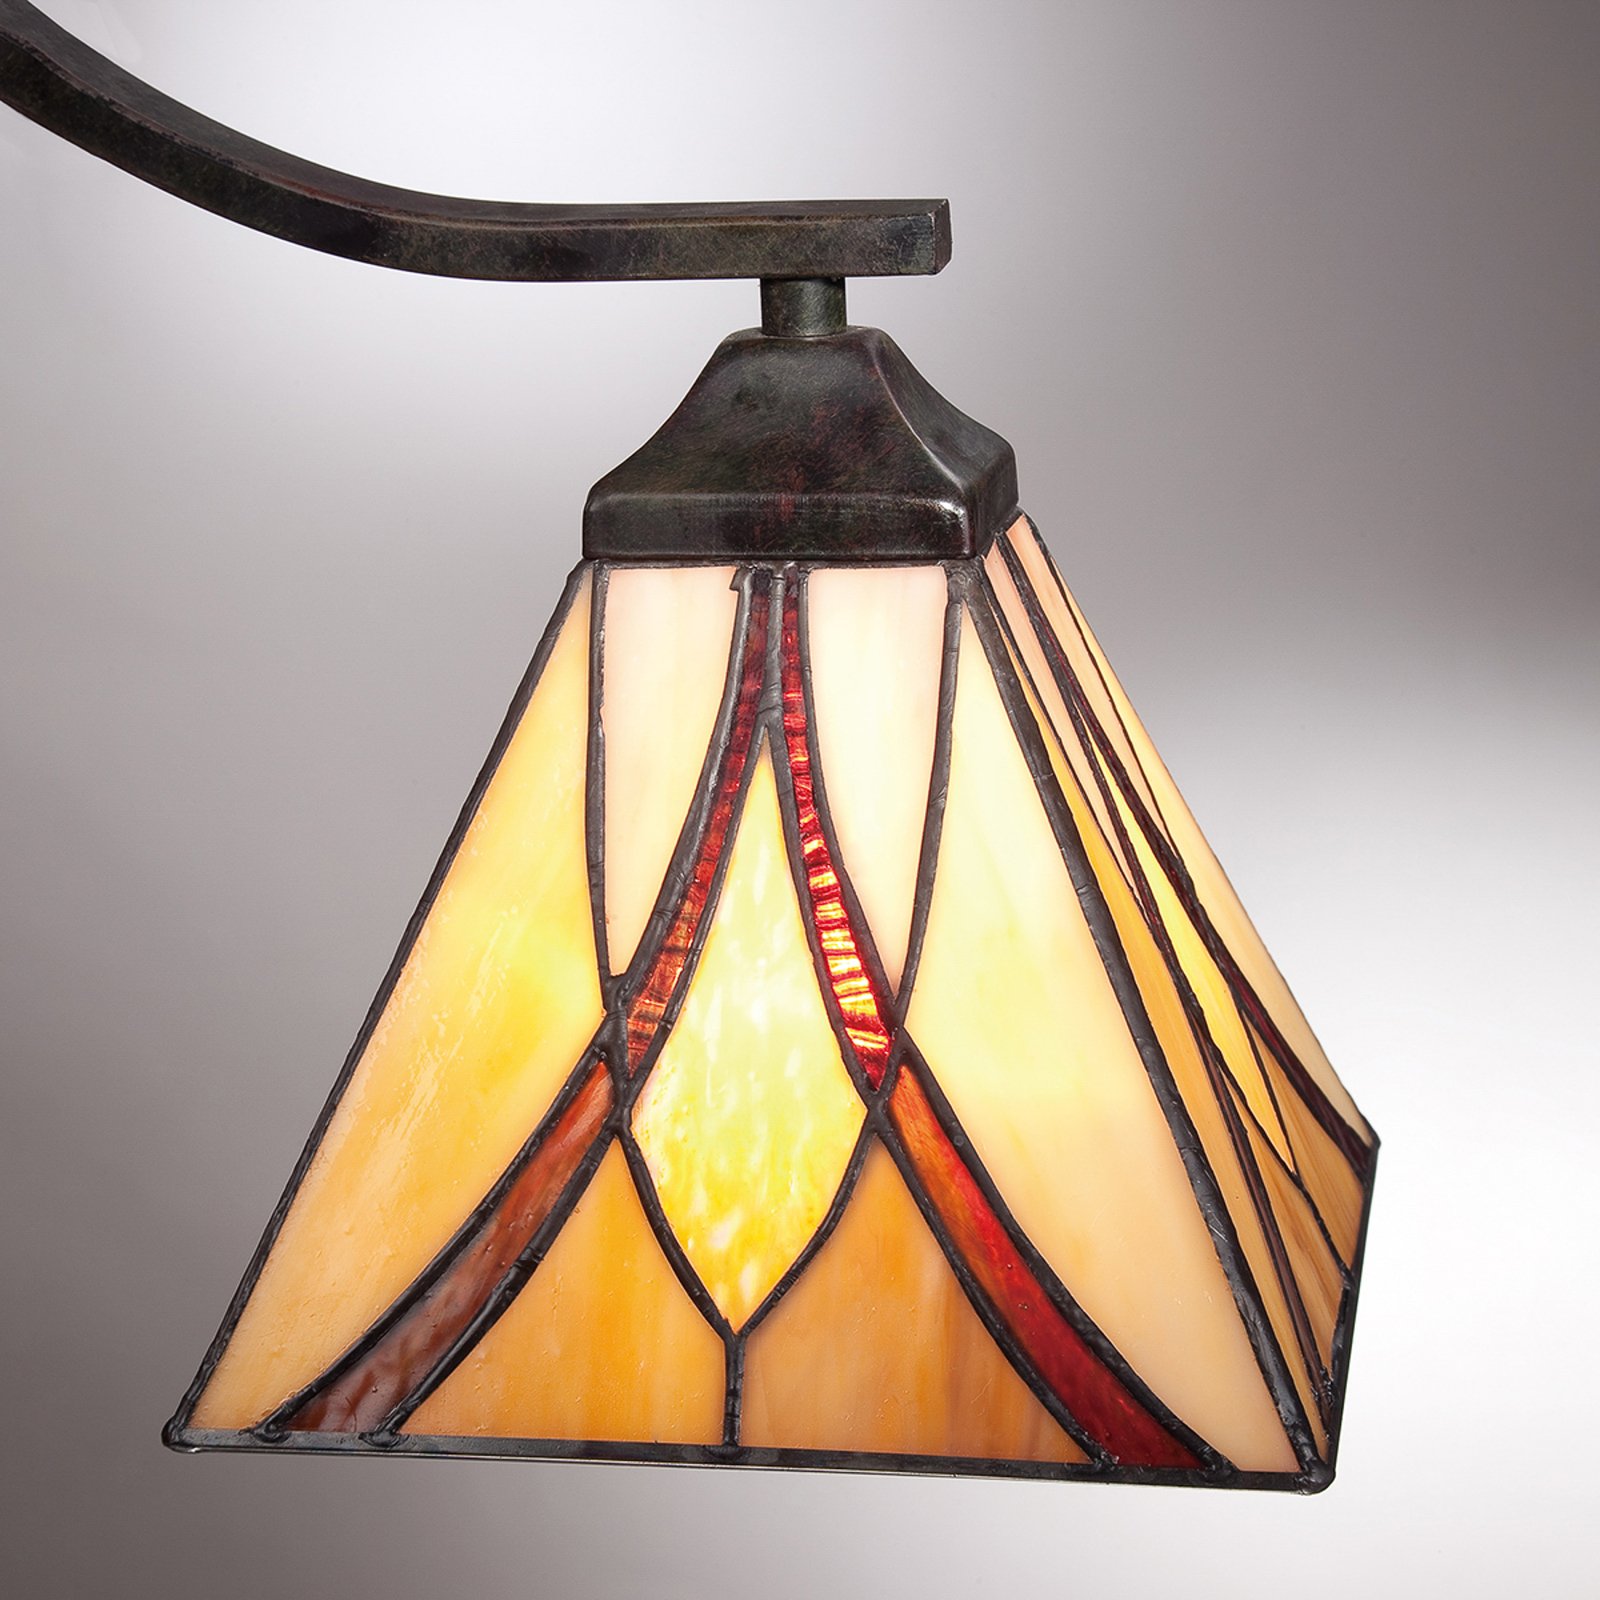 Hanglamp Asheville, 3-lamps